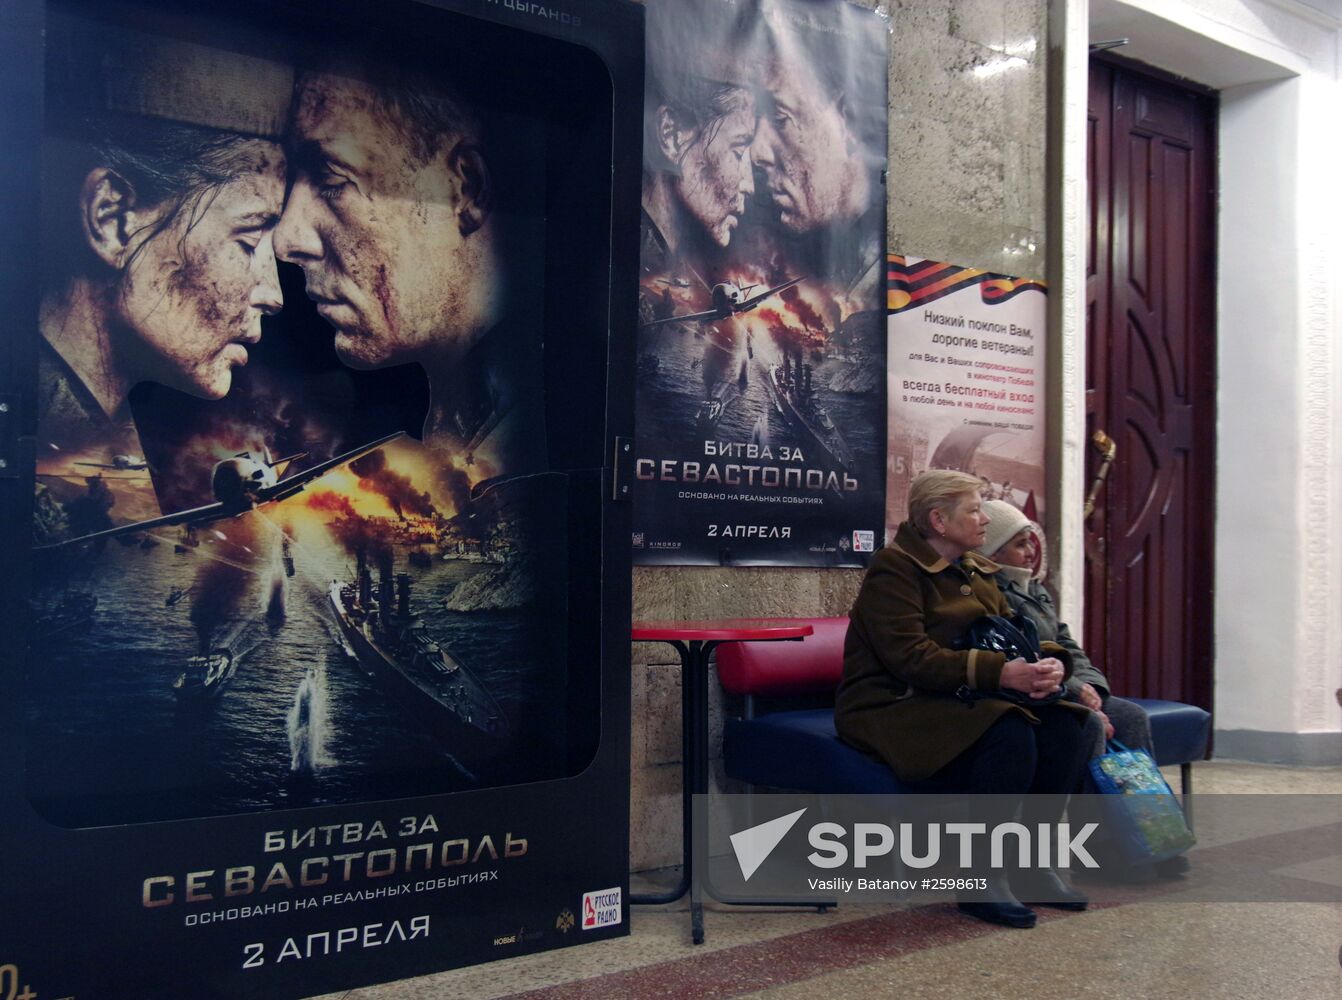 Presentation of film "Battle for Sevastopol" in Sevastopol